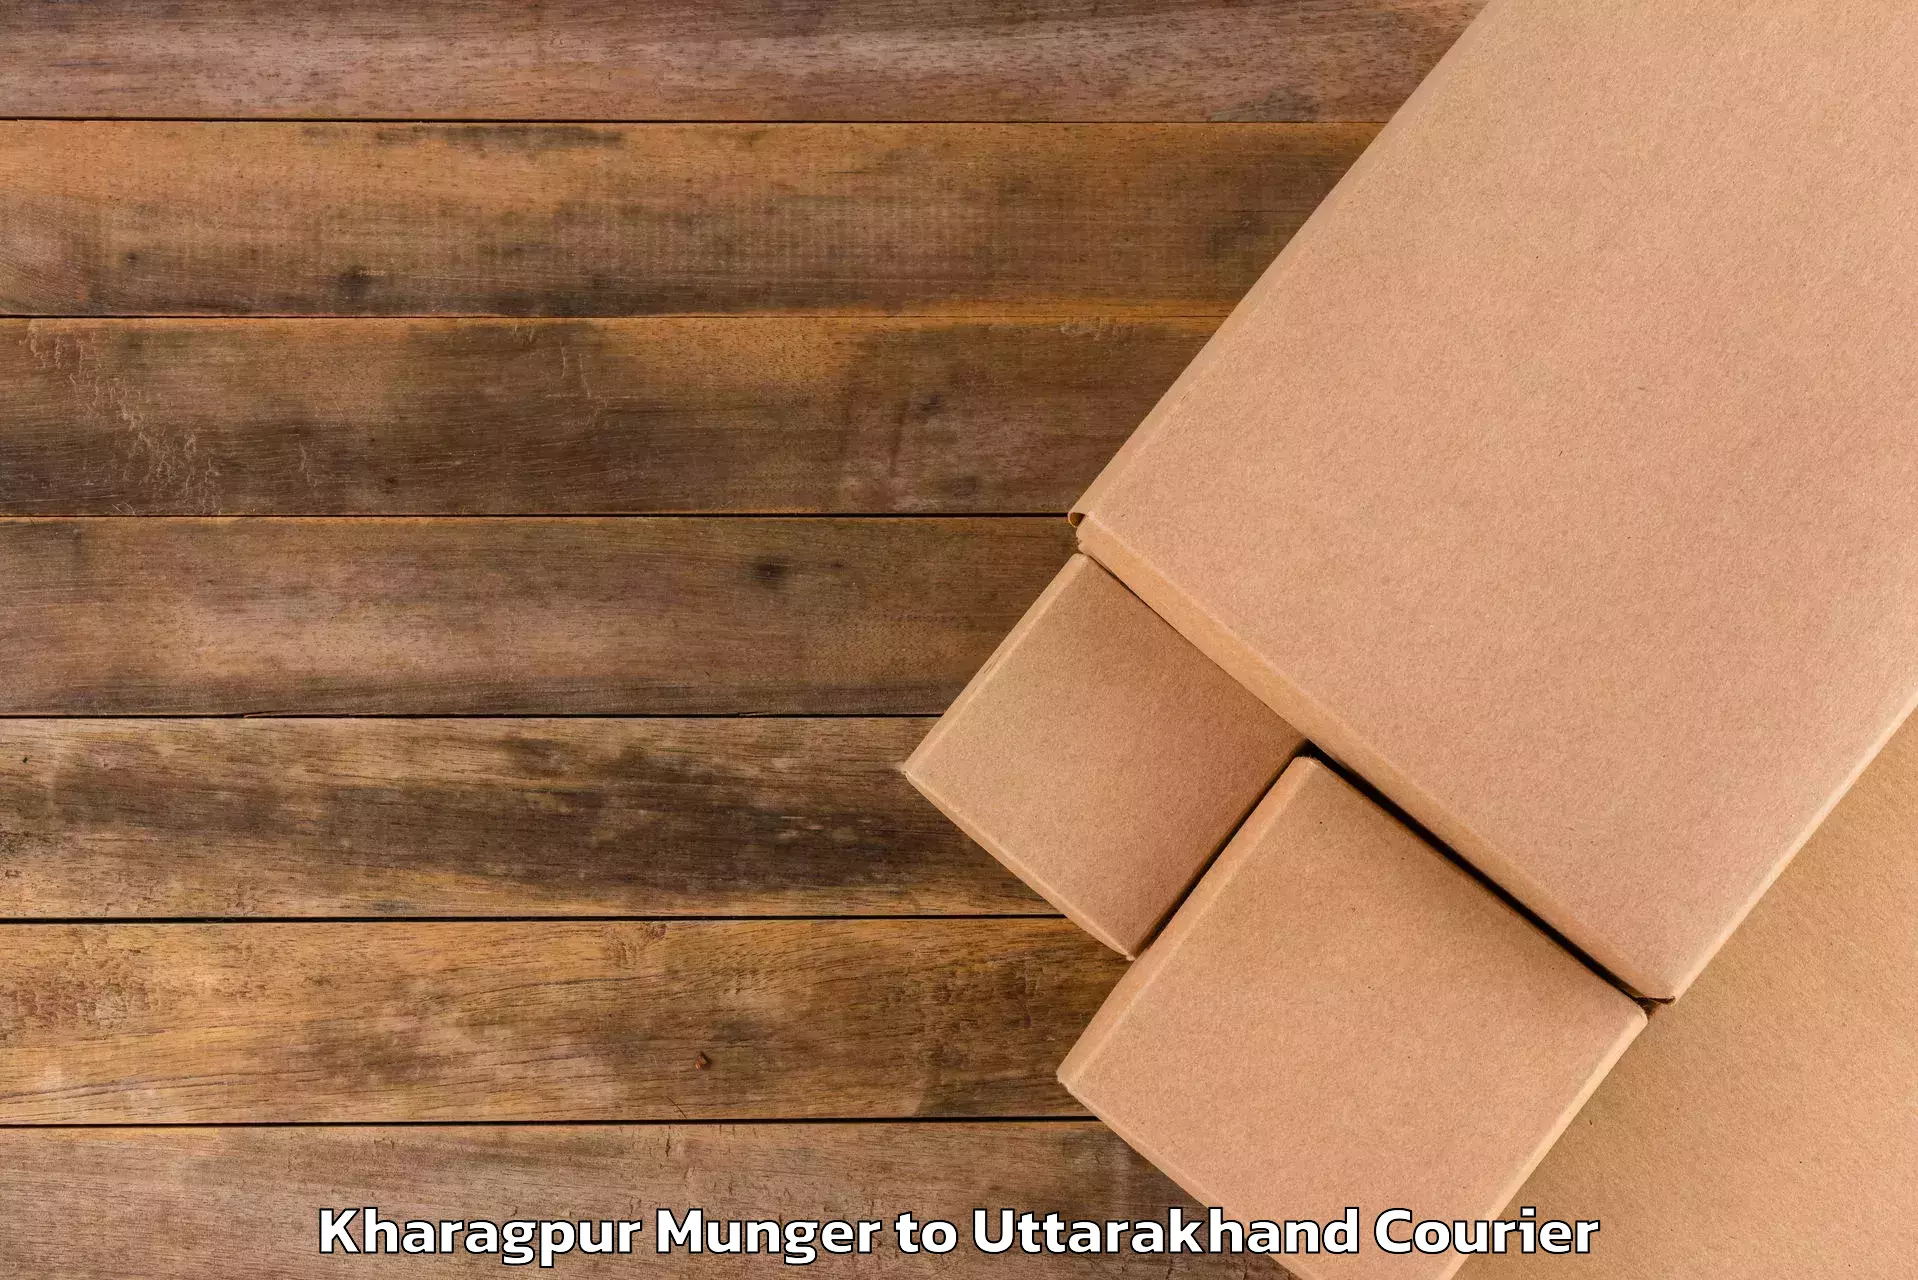 Online luggage shipping Kharagpur Munger to Pithoragarh